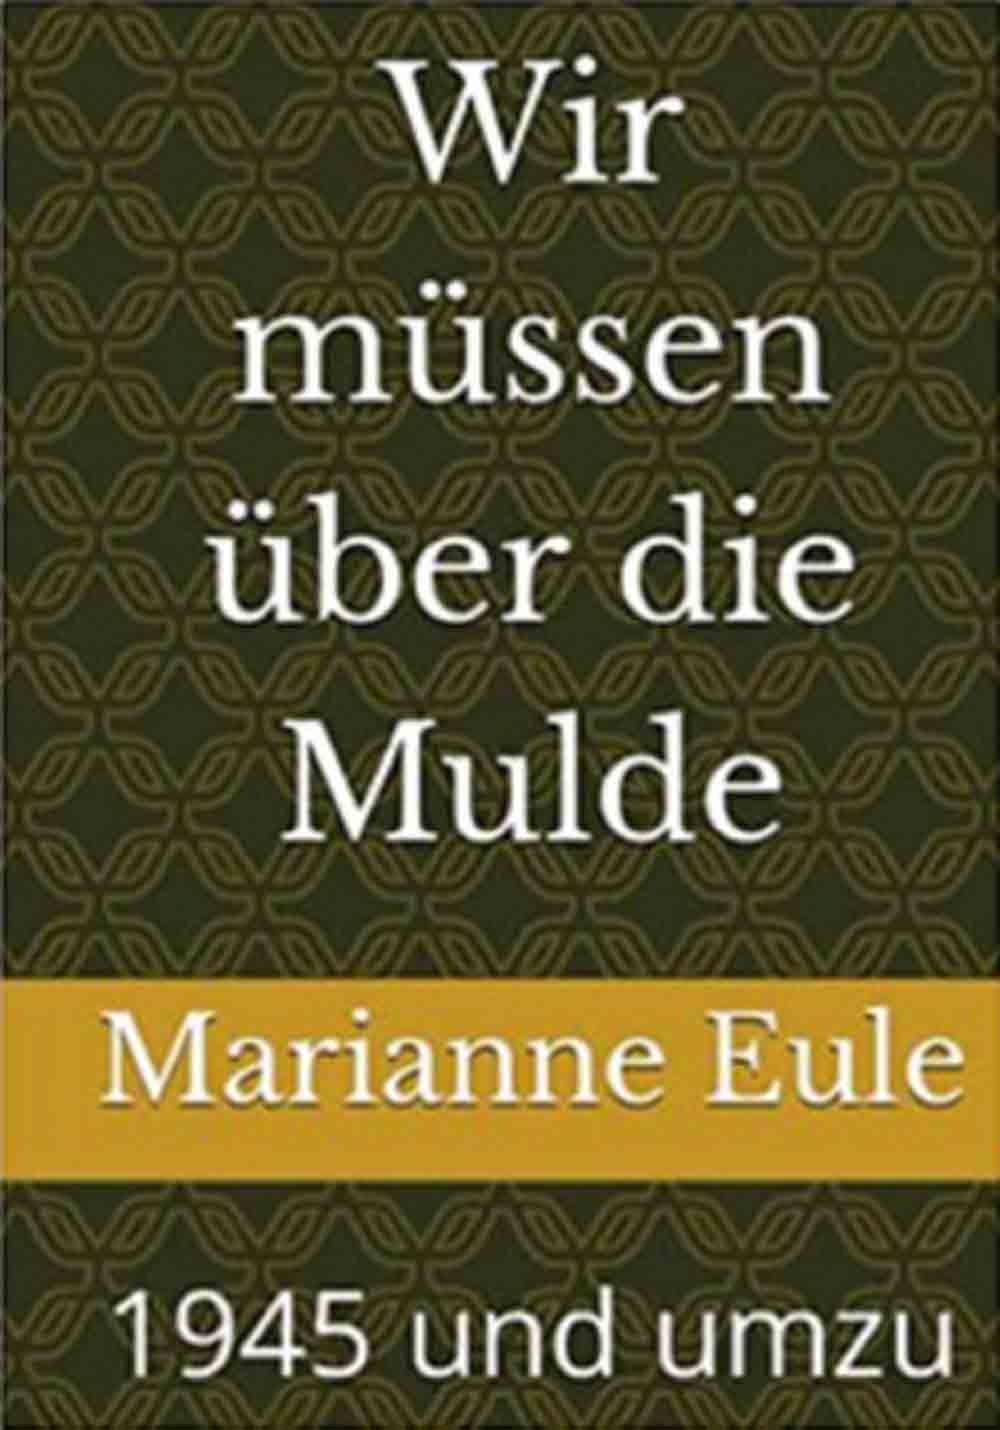 Lesetipps für Gütersloh, Marianne Eule, »Wir müssen über die Mulde. 1945 und umzu.«